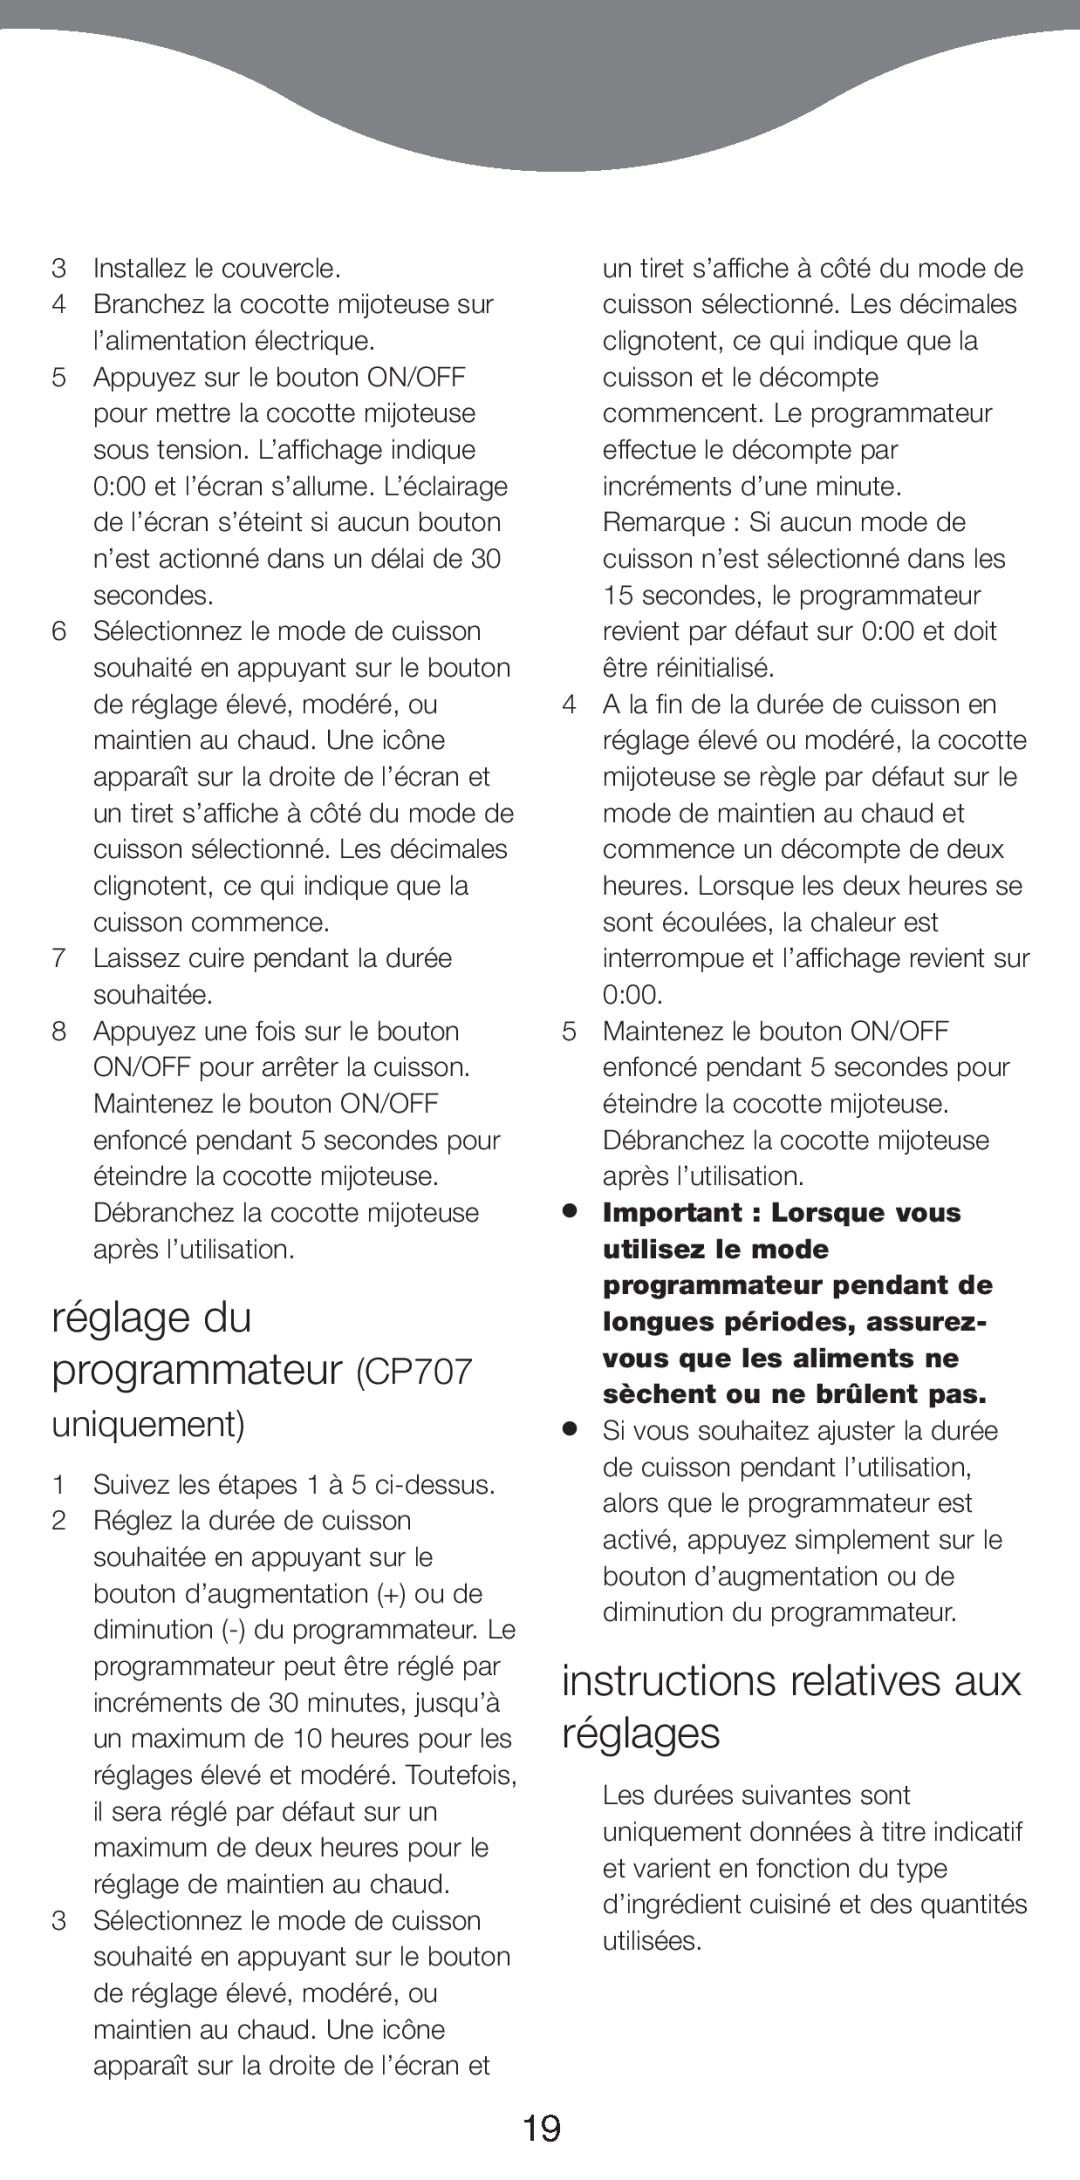 Kenwood CP706 manual rŽglage du programmateur CP707, instructions relatives aux rŽglages, uniquement 